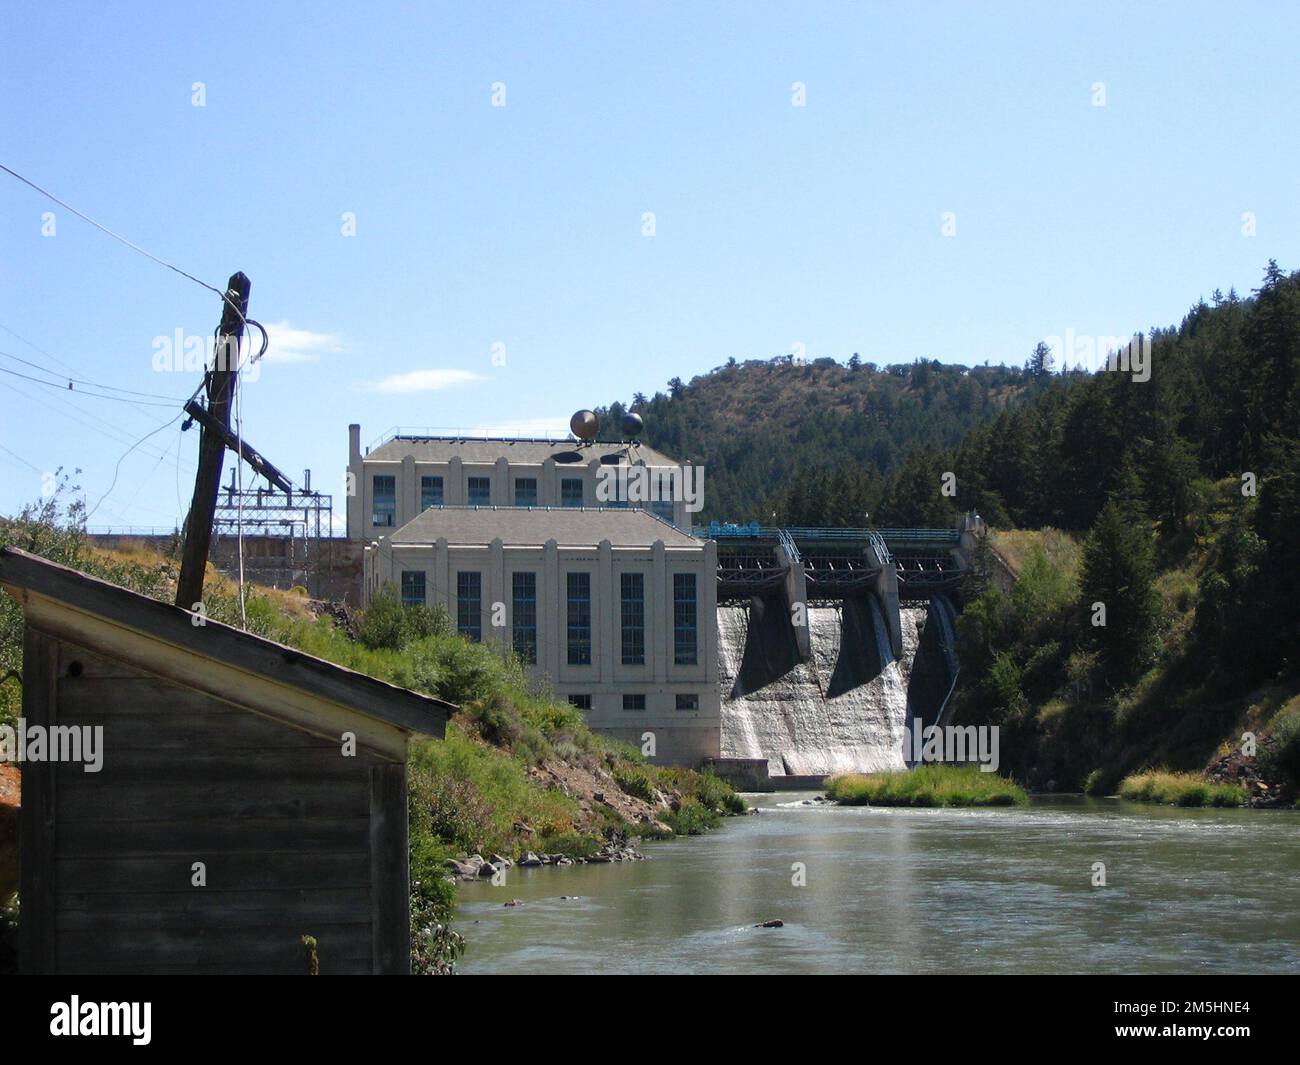 Pioneer Historic Byway - Hells Canyon Dam. Dieser Damm für das Hells Canyon Reservoir reguliert das Wasser. Berge bilden eine Seite des Flusses und das weiße Kraftwerk steht neben dem Damm. Lage: Hells Canyon Dam, Idaho (45,244° N 116,701° W) Stockfoto